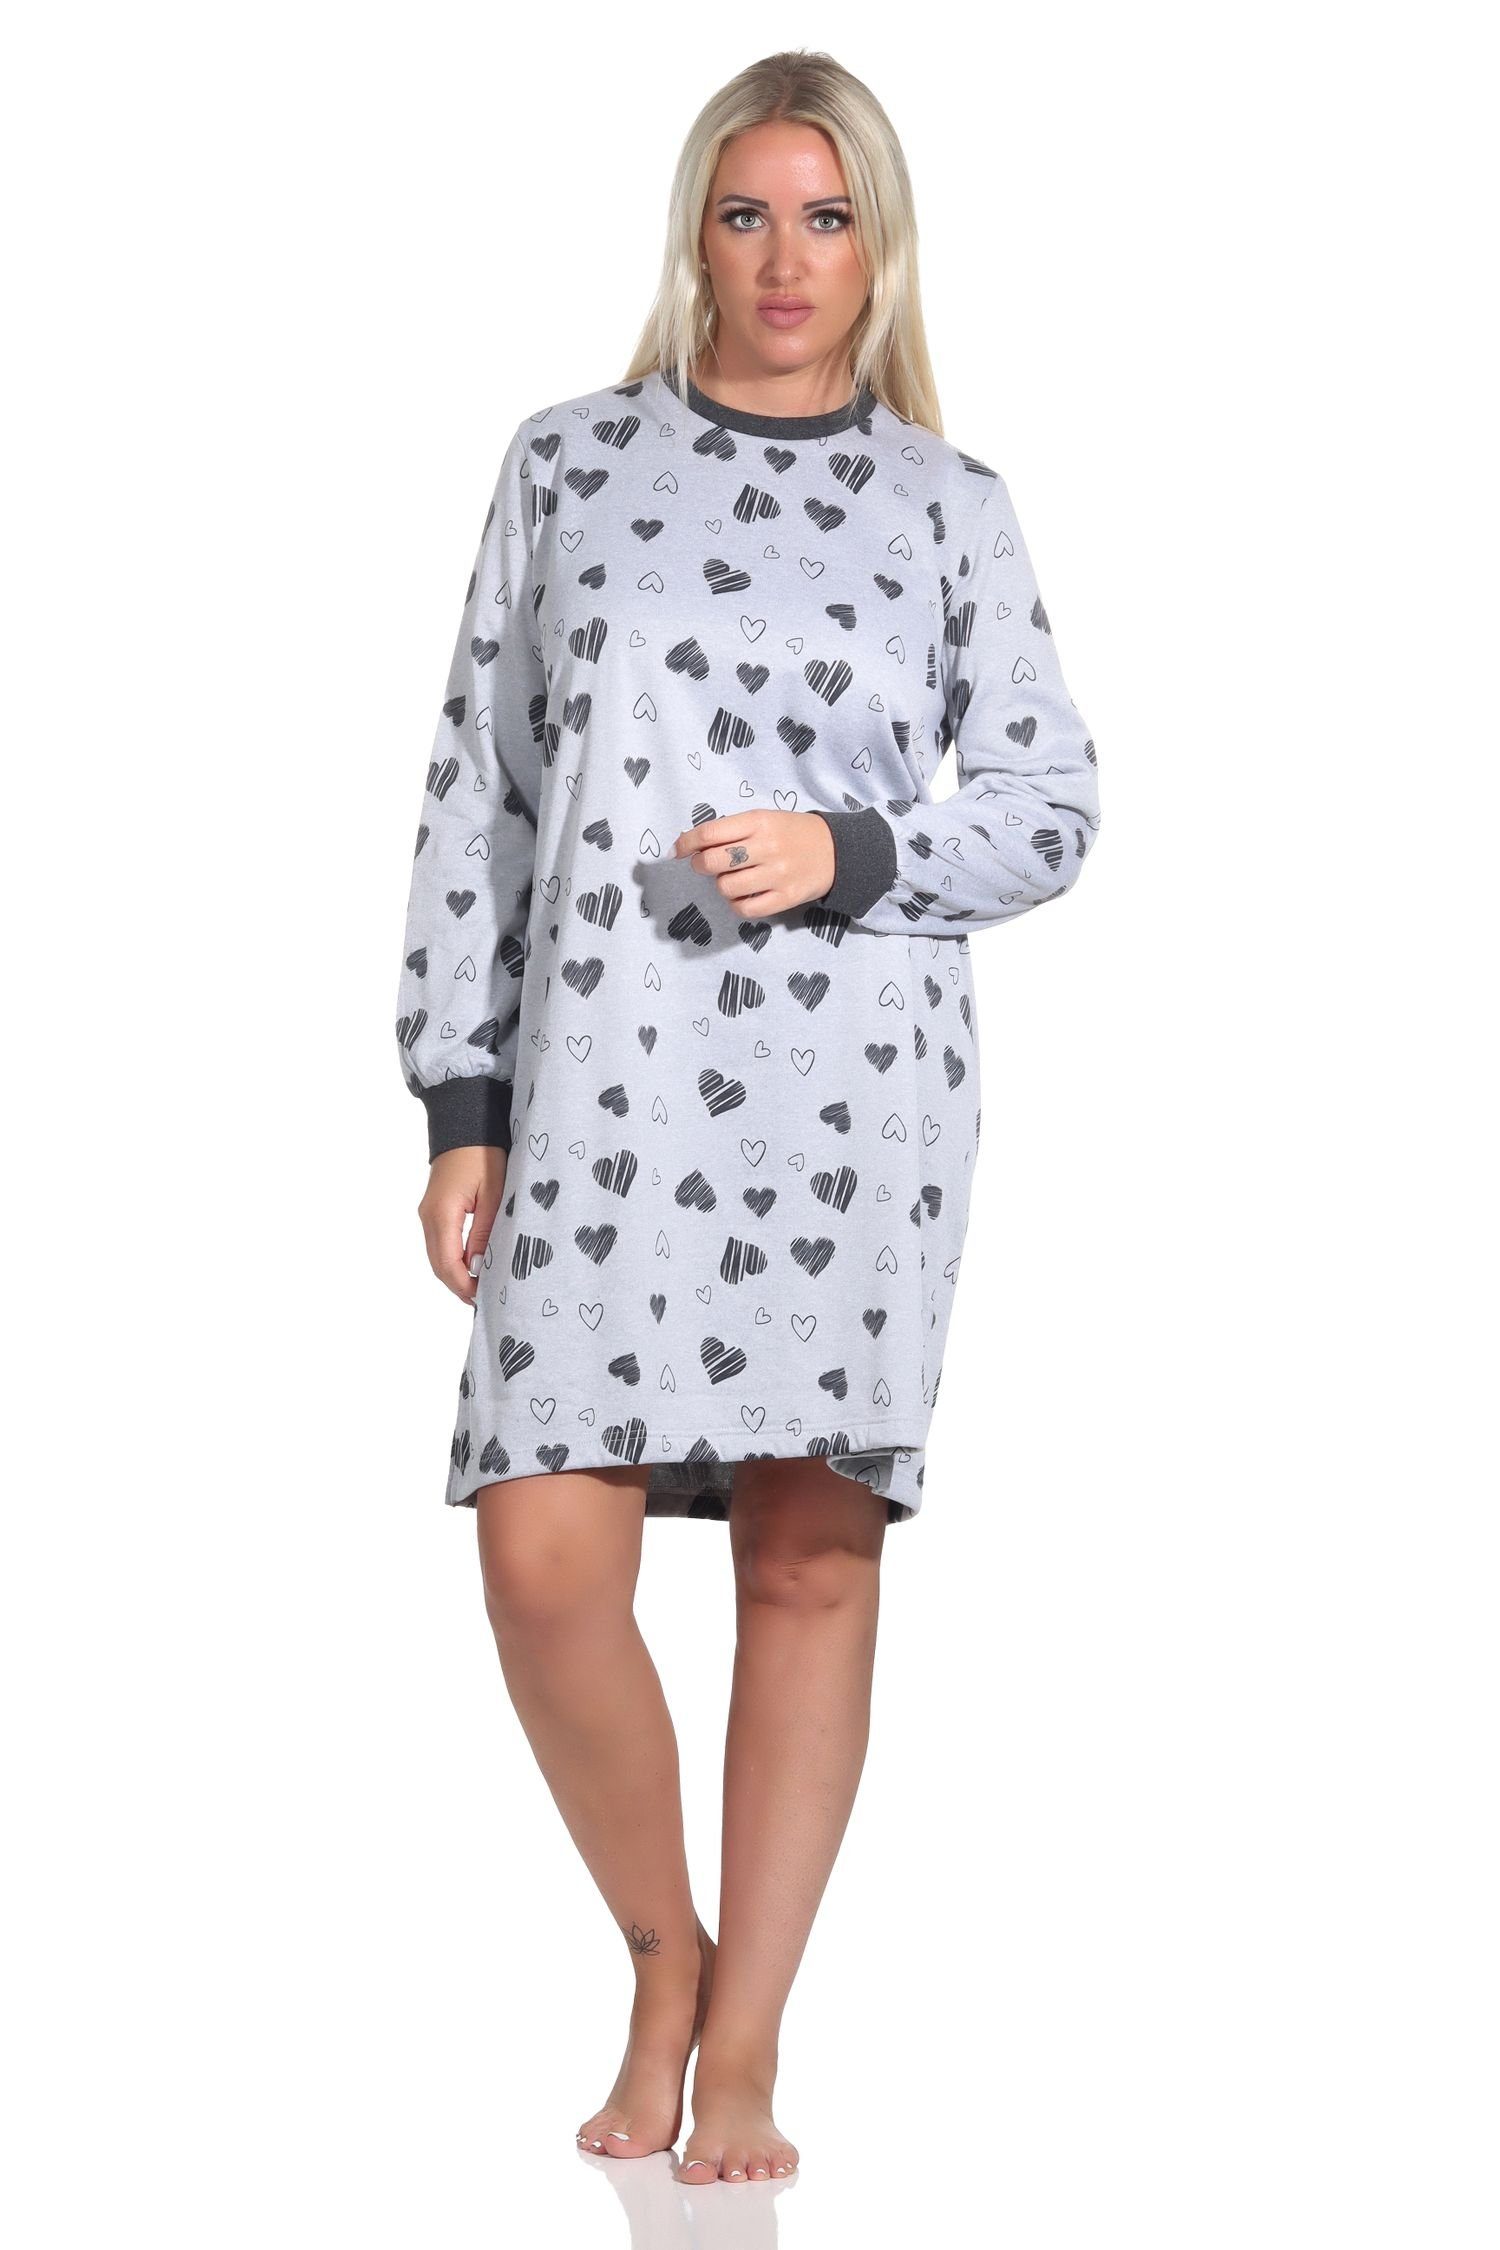 Normann Nachthemd Damen in langarm grau-melange Optik mit Herz Frottee Nachthemd Bündchen